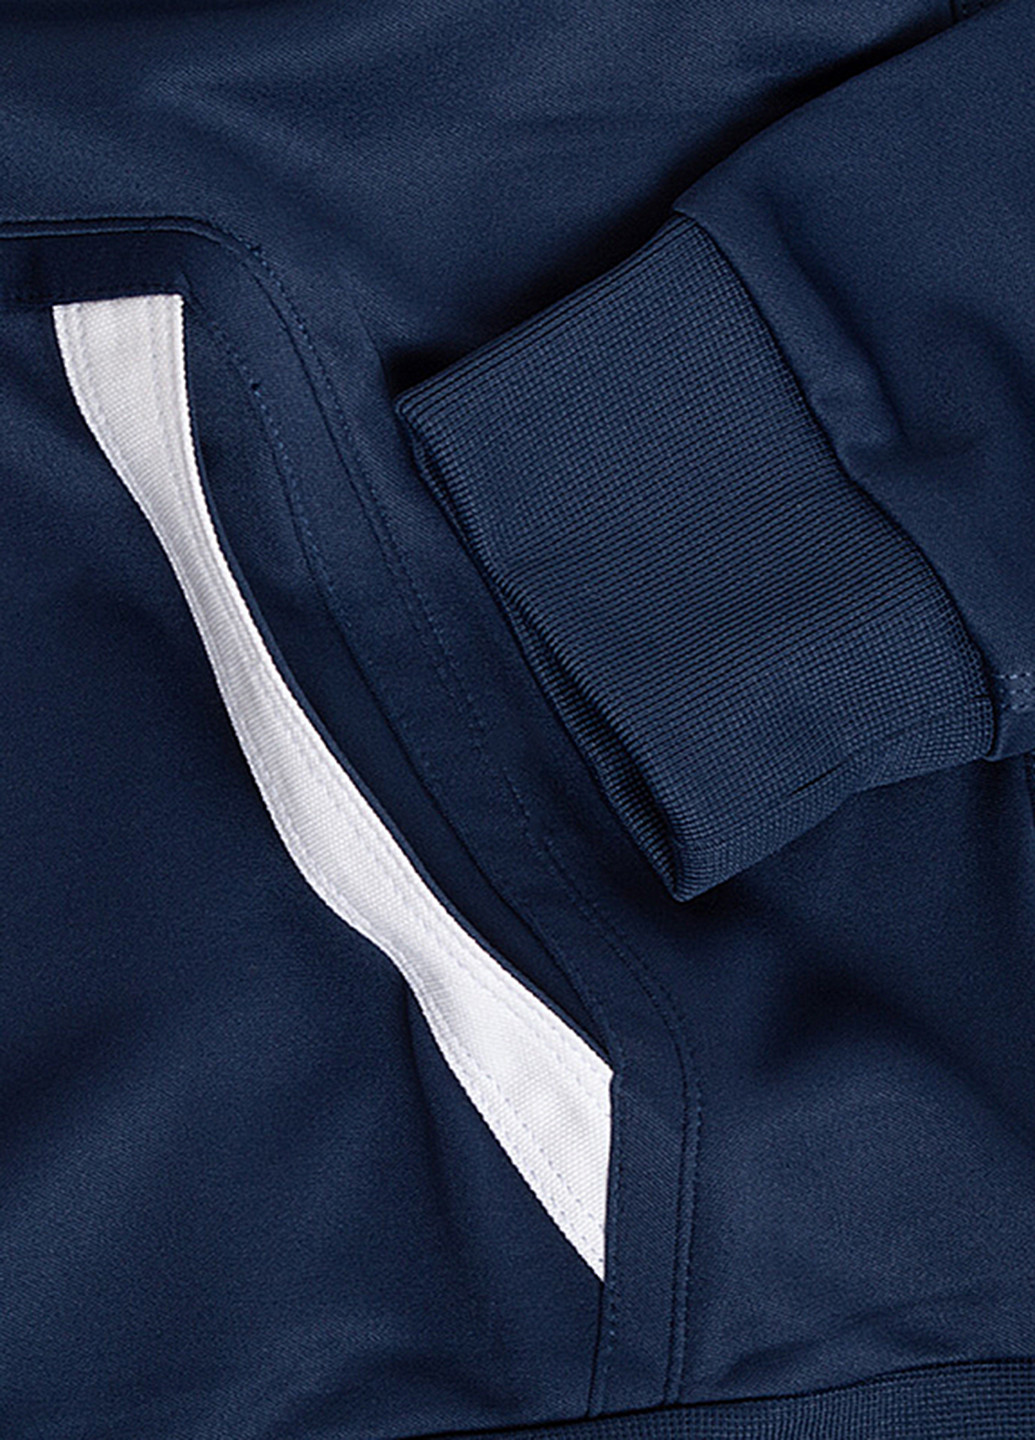 Темно-синий демисезонный костюм (олимпийка, брюки) брючный Nike Nike U NSW AIR TRACKSUIT